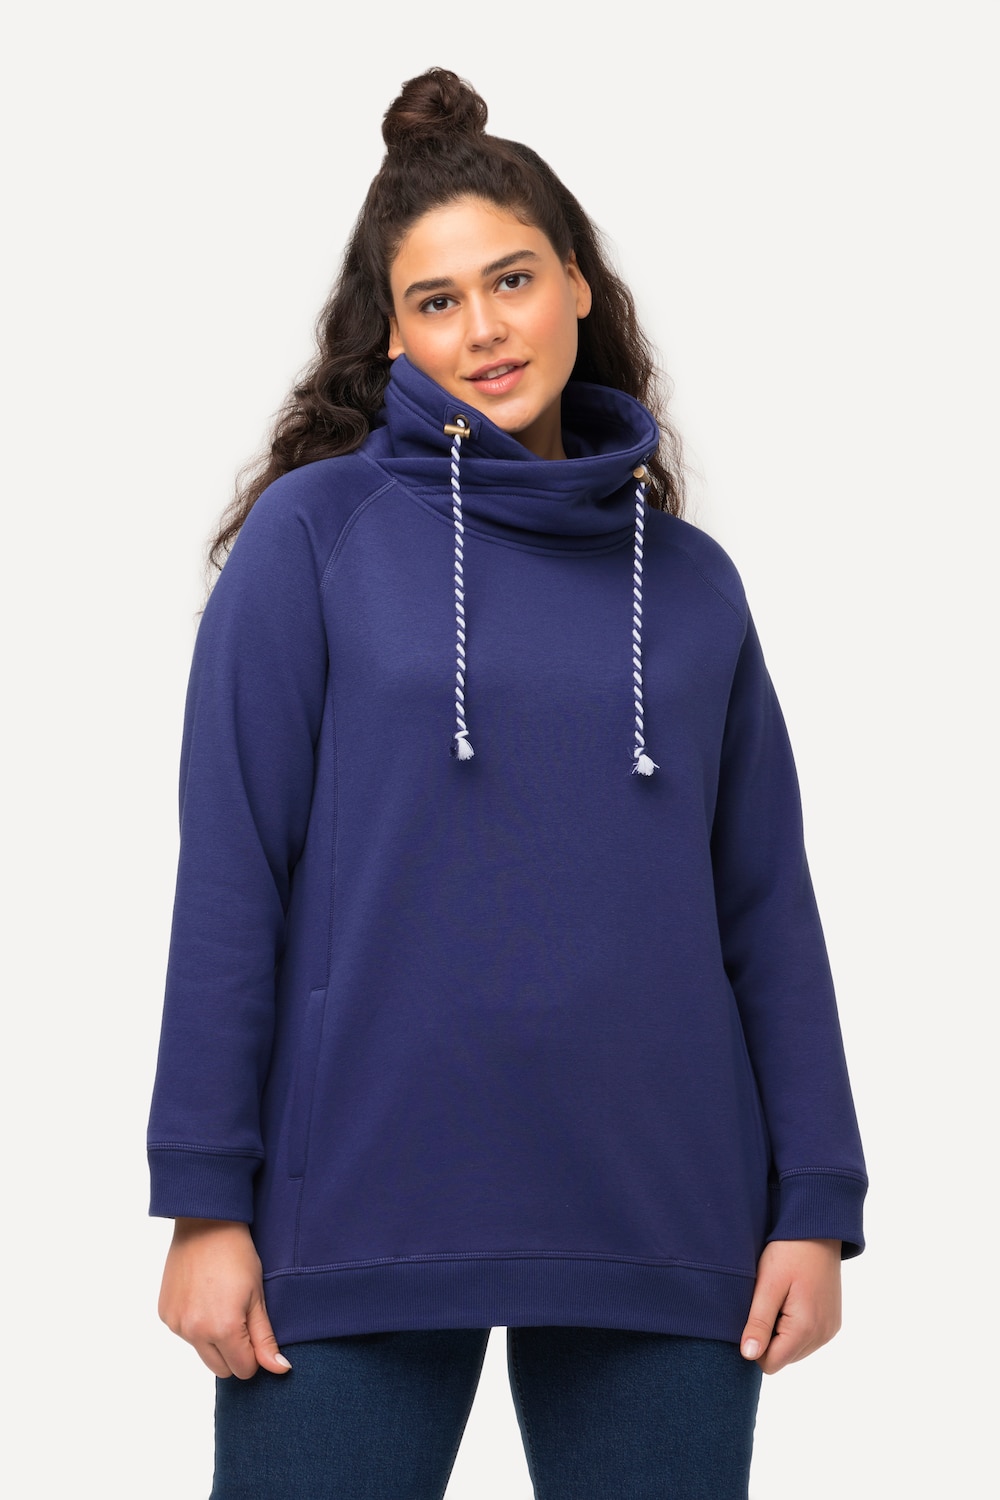 Grote Maten sweatshirt, Dames, blauw, Maat: 50/52, Katoen/Polyester, Ulla Popken